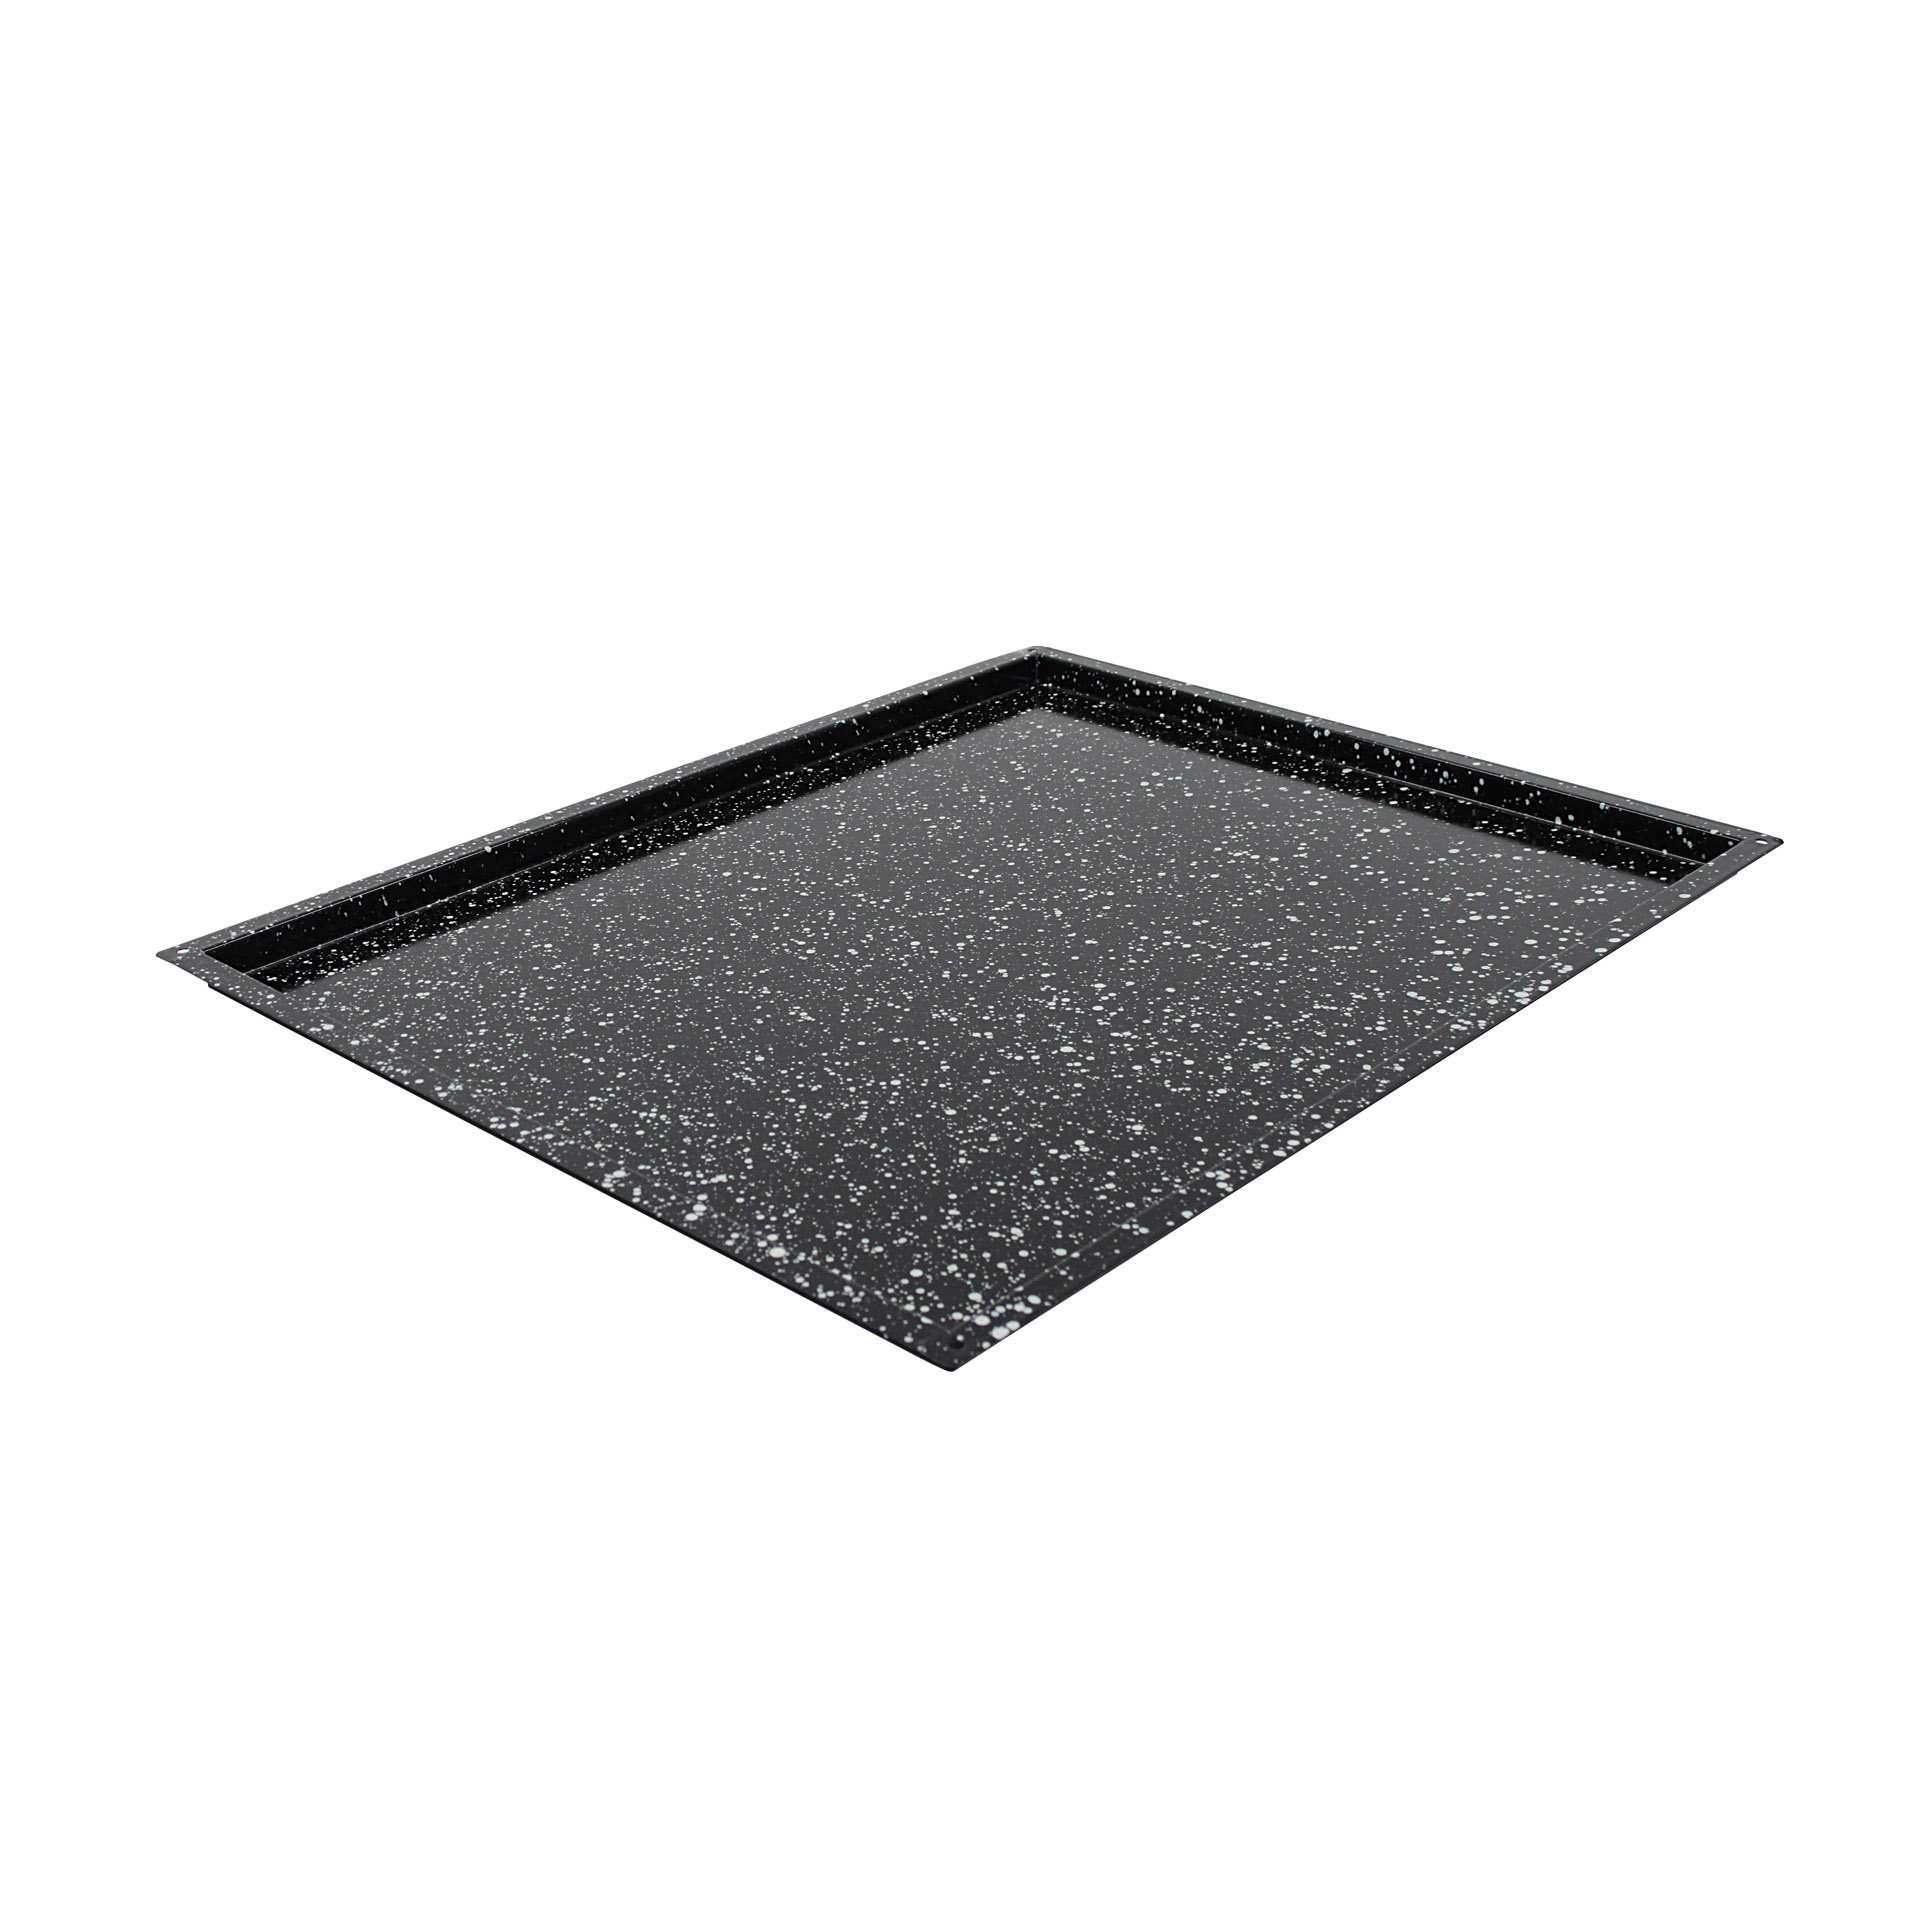 GN-Backblech - Granit-Emaille - Abm. 65,0 x 53,0 x 2,5 cm - GN 2/1 (650 x 530 mm) - 20 mm - Stahlblech - 382500-C